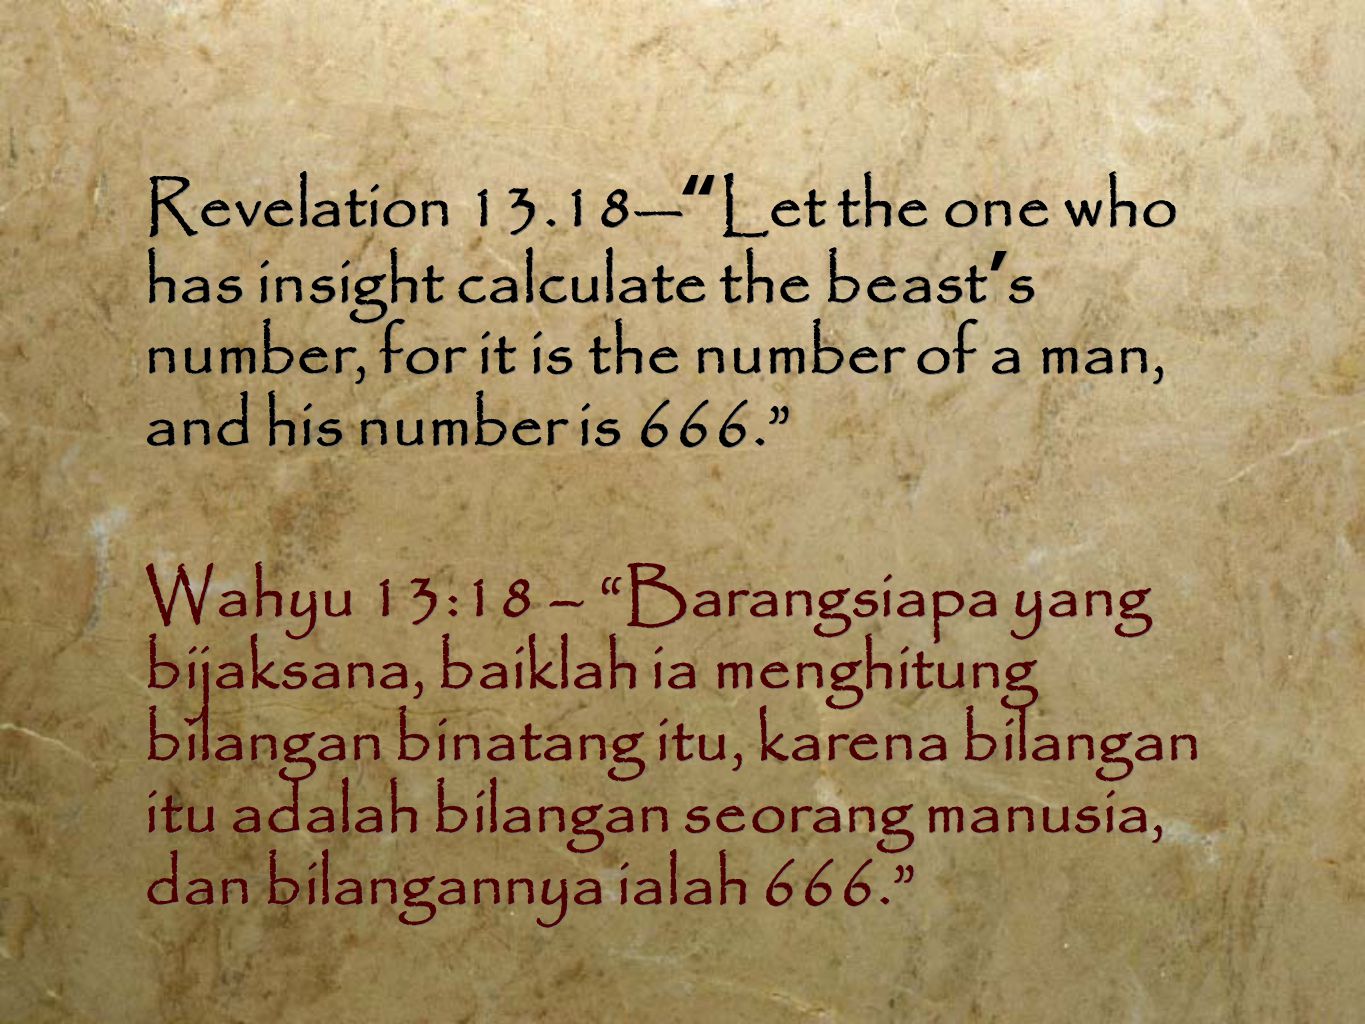 Revelation 13.18— Let the one who has insight calculate the beast ’ s number, for it is the number of a man, and his number is 666. Wahyu 13:18 – Barangsiapa yang bijaksana, baiklah ia menghitung bilangan binatang itu, karena bilangan itu adalah bilangan seorang manusia, dan bilangannya ialah 666. Revelation 13.18— Let the one who has insight calculate the beast ’ s number, for it is the number of a man, and his number is 666. Wahyu 13:18 – Barangsiapa yang bijaksana, baiklah ia menghitung bilangan binatang itu, karena bilangan itu adalah bilangan seorang manusia, dan bilangannya ialah 666.